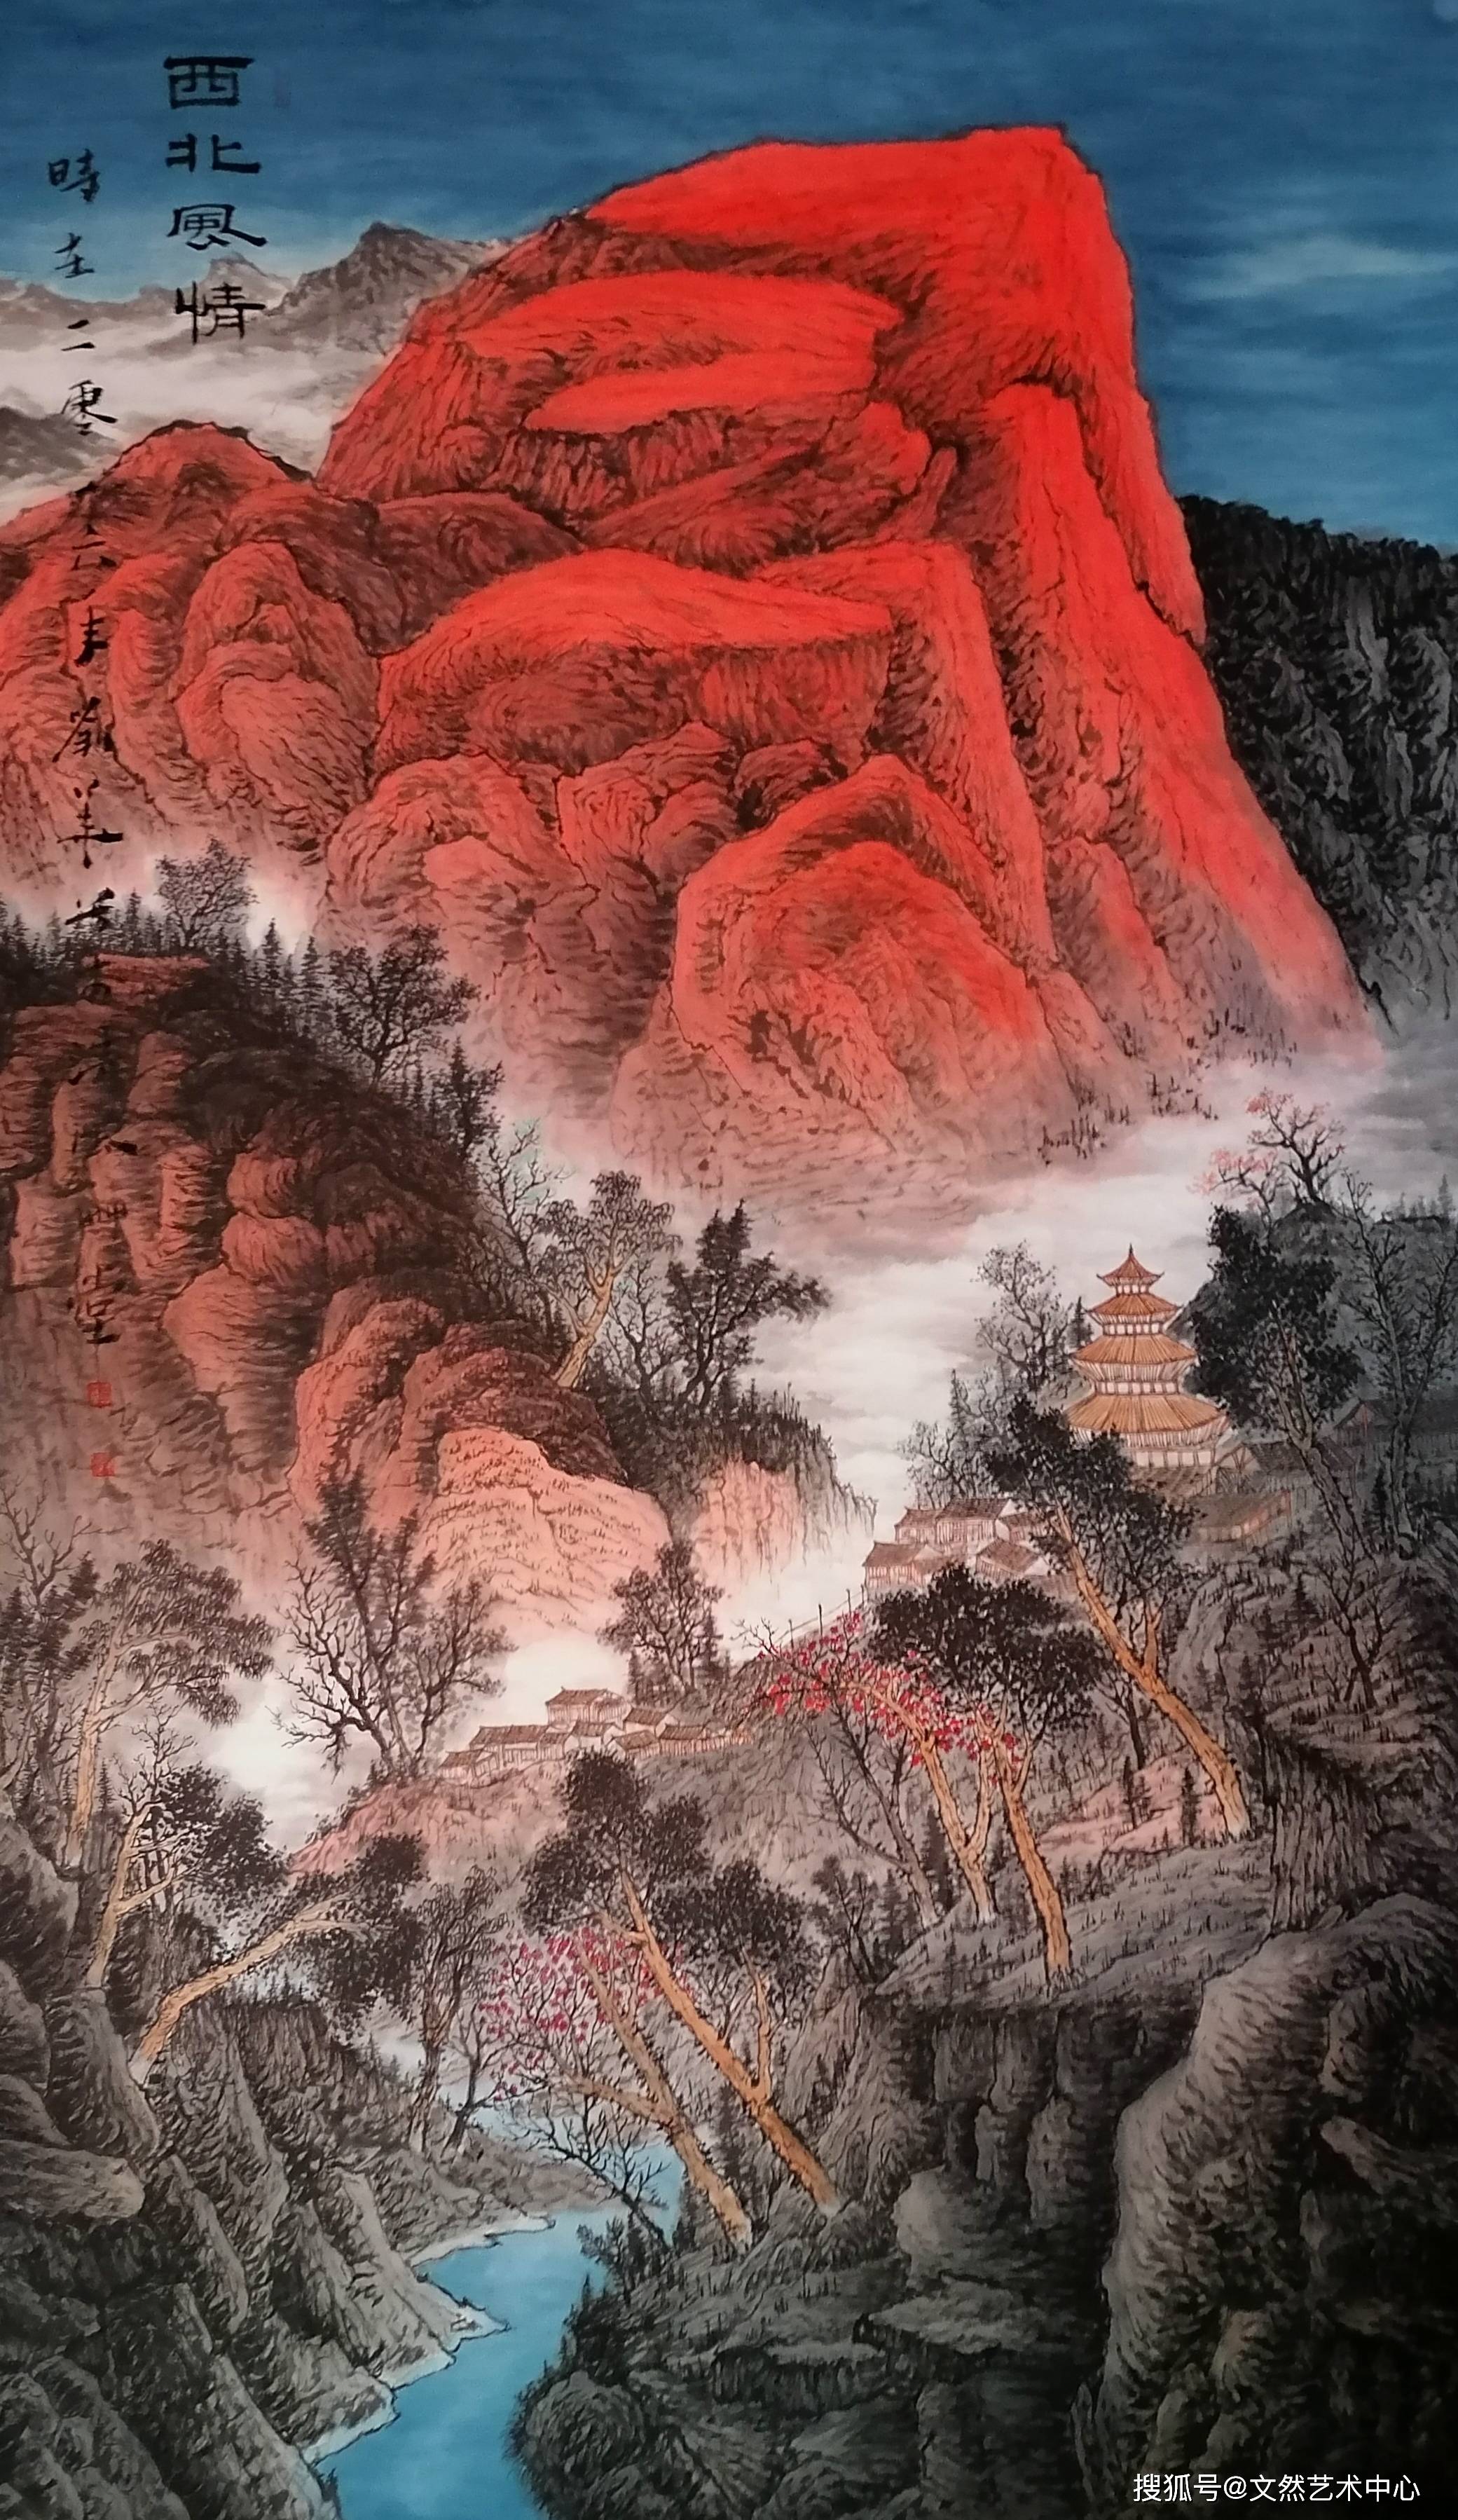 中国出大红袍知名画家图片